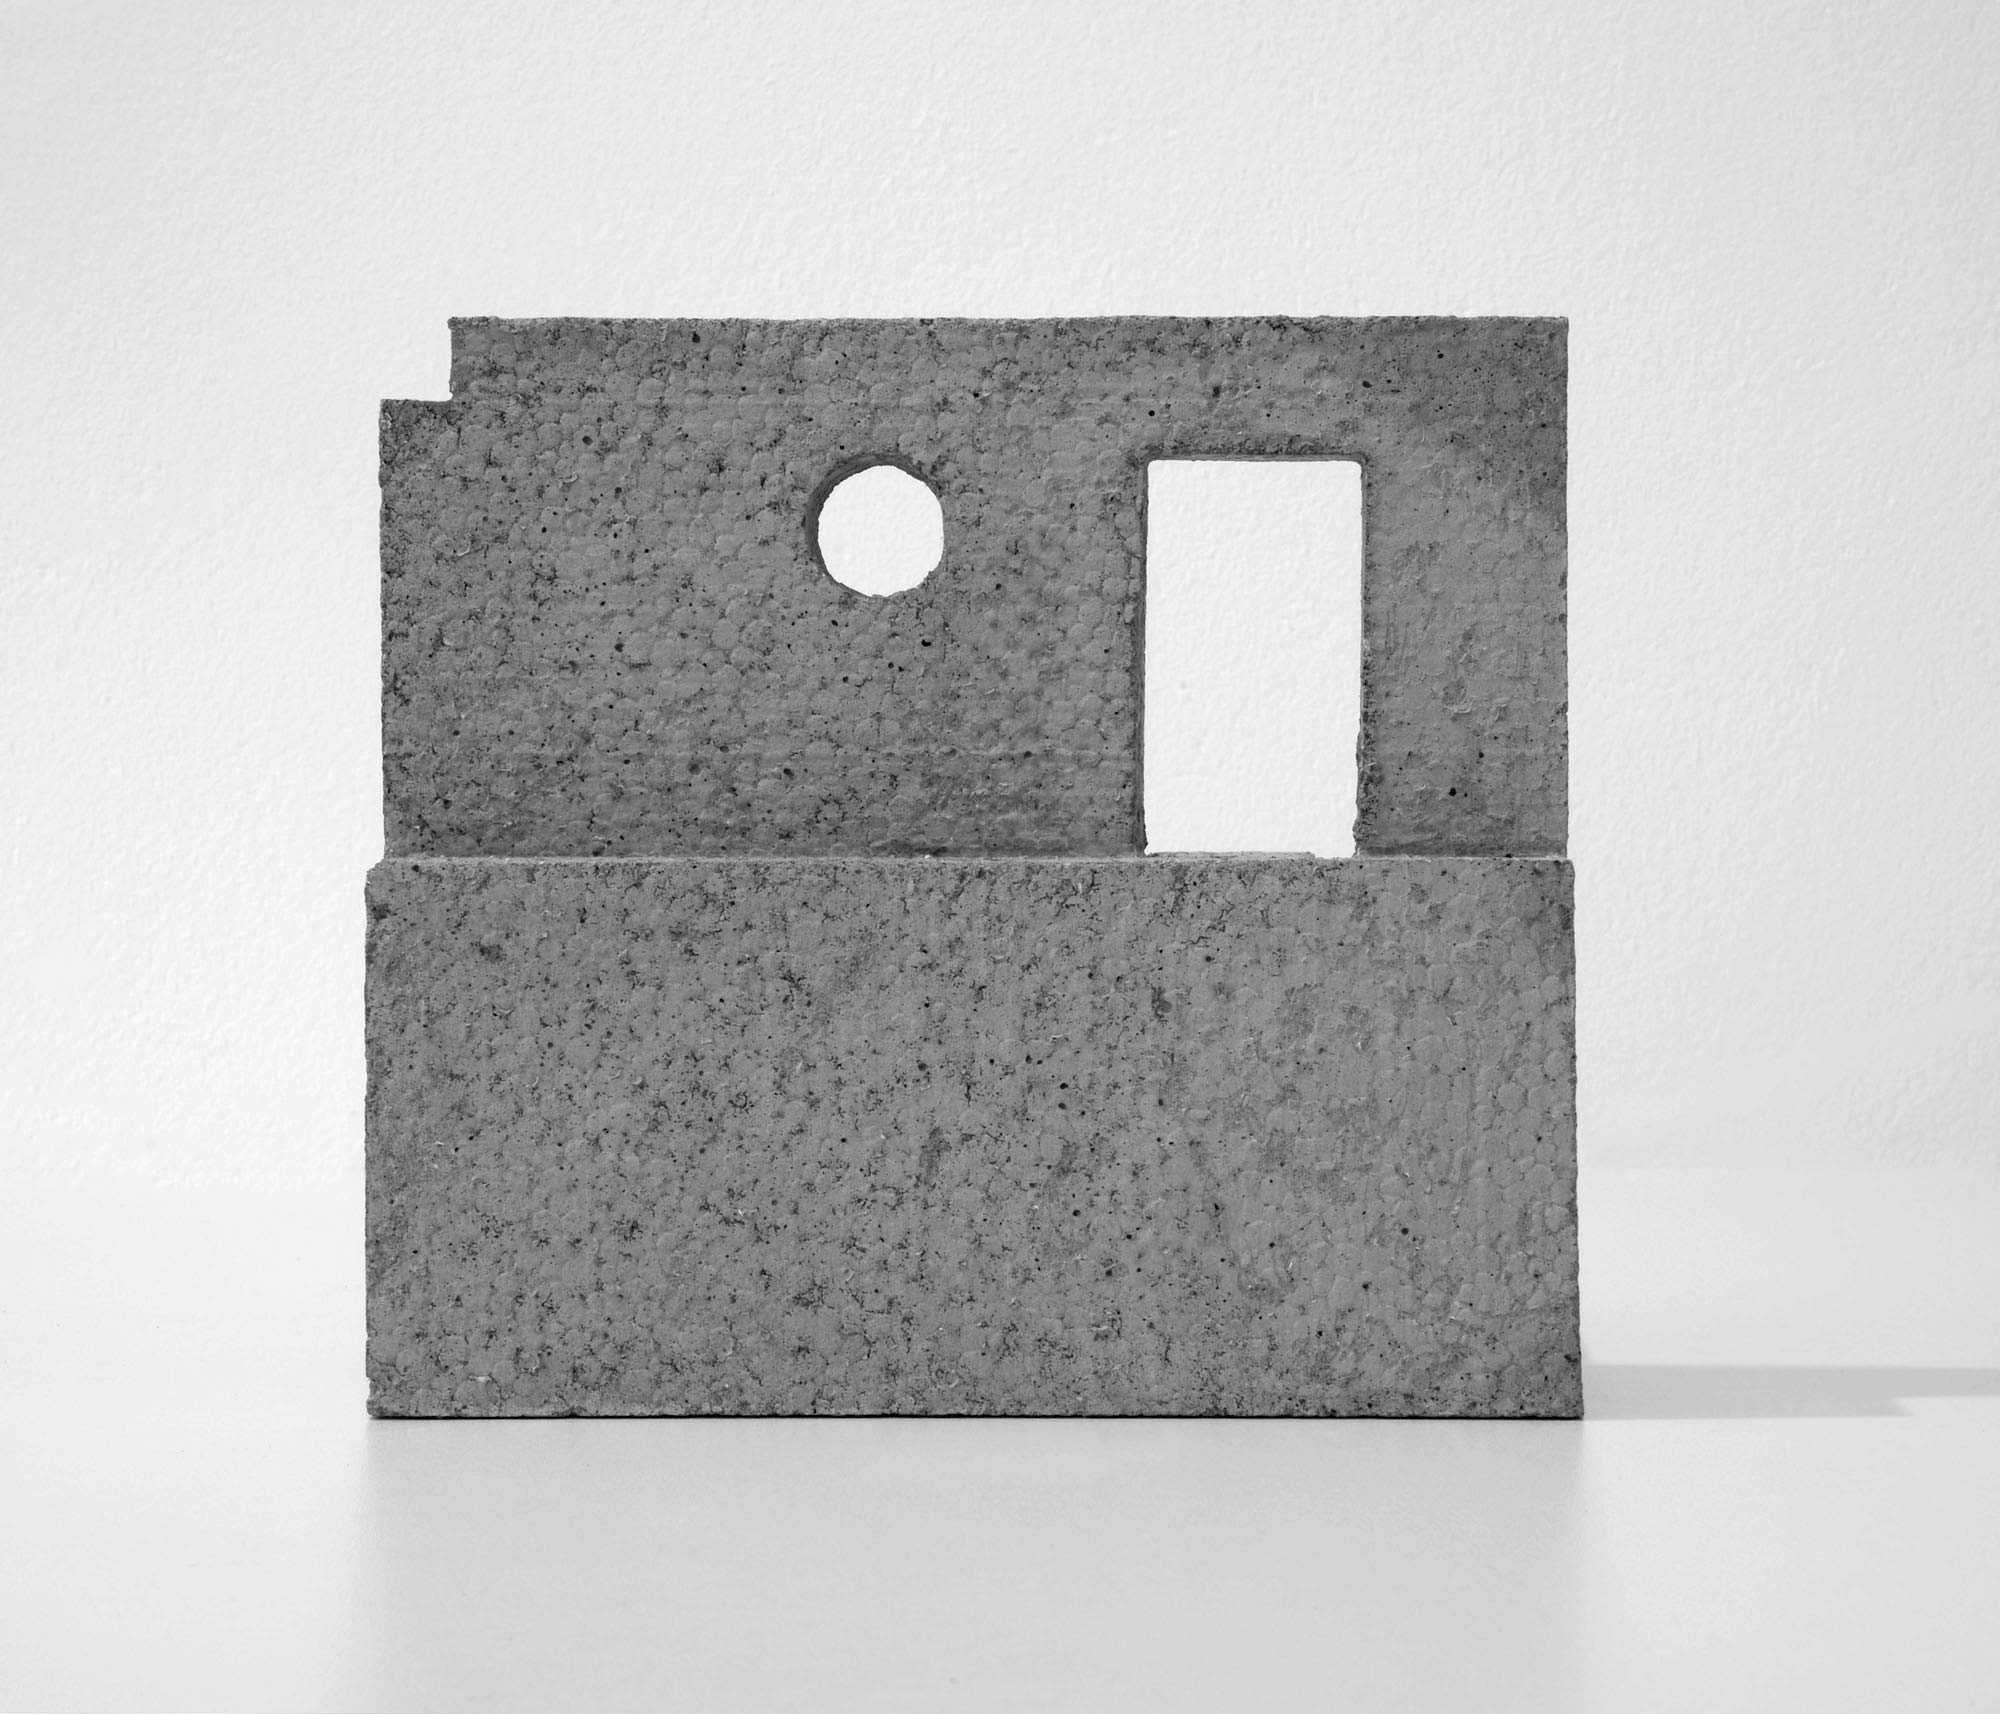 mattia listowski art design objet décoration sculpture béton moulage micro architecture maquette passage édition limitée numérotée signée paris bruxelles 2019